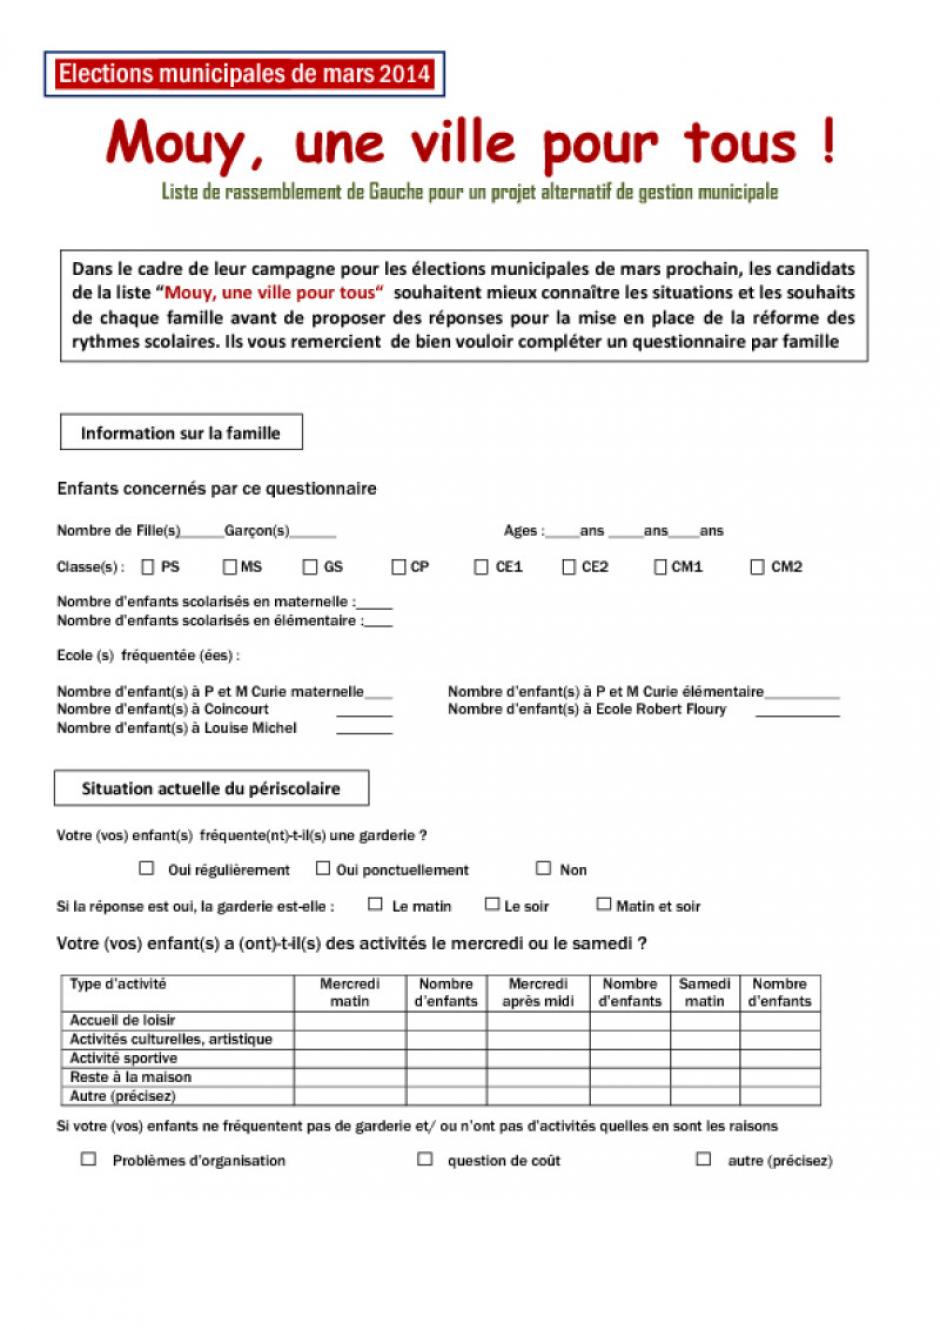 Questionnaire de la liste « Mouy, une ville pour tous » portant sur la réforme des rythmes scolaires - Mouy, 31 janvier 2014